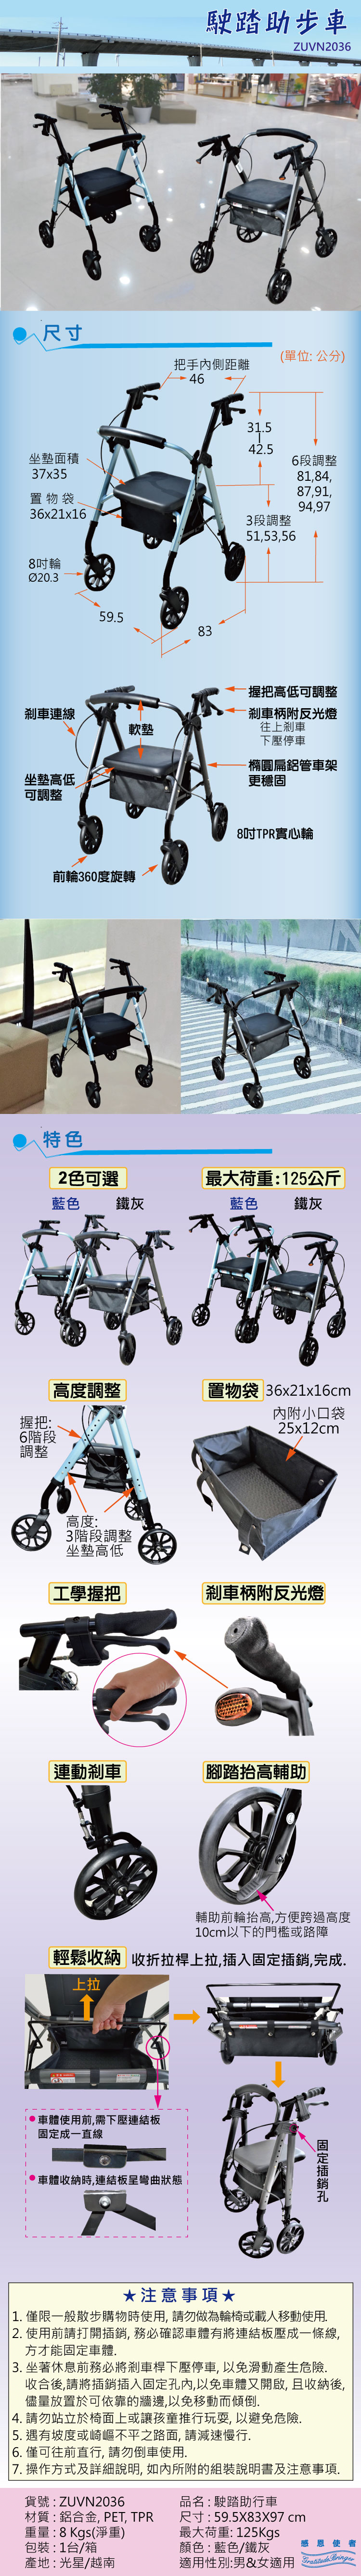 日華國際~感恩使者 #駛踏助步車-助行車-助行器-散步購物車:高度可調整，有煞車功能可幫助減緩速度，累了可坐下休息，置物袋好方便，可折疊收納